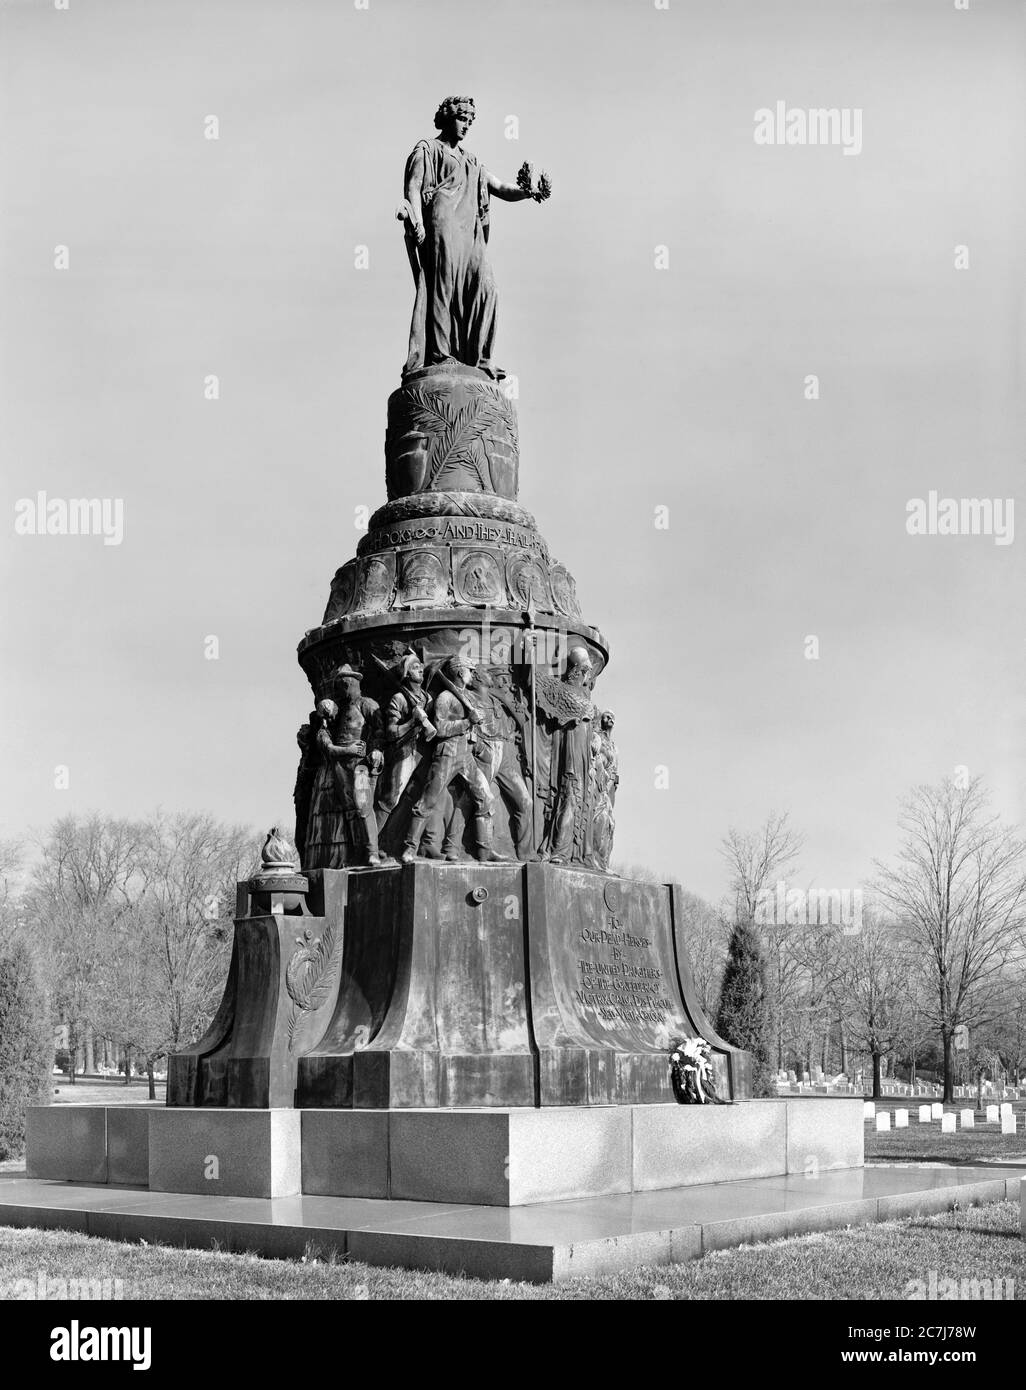 Monument à Confederate Dead, cimetière national d'Arlington, Arlington, Virginia, USA, photo de Theodor Horydczak Banque D'Images